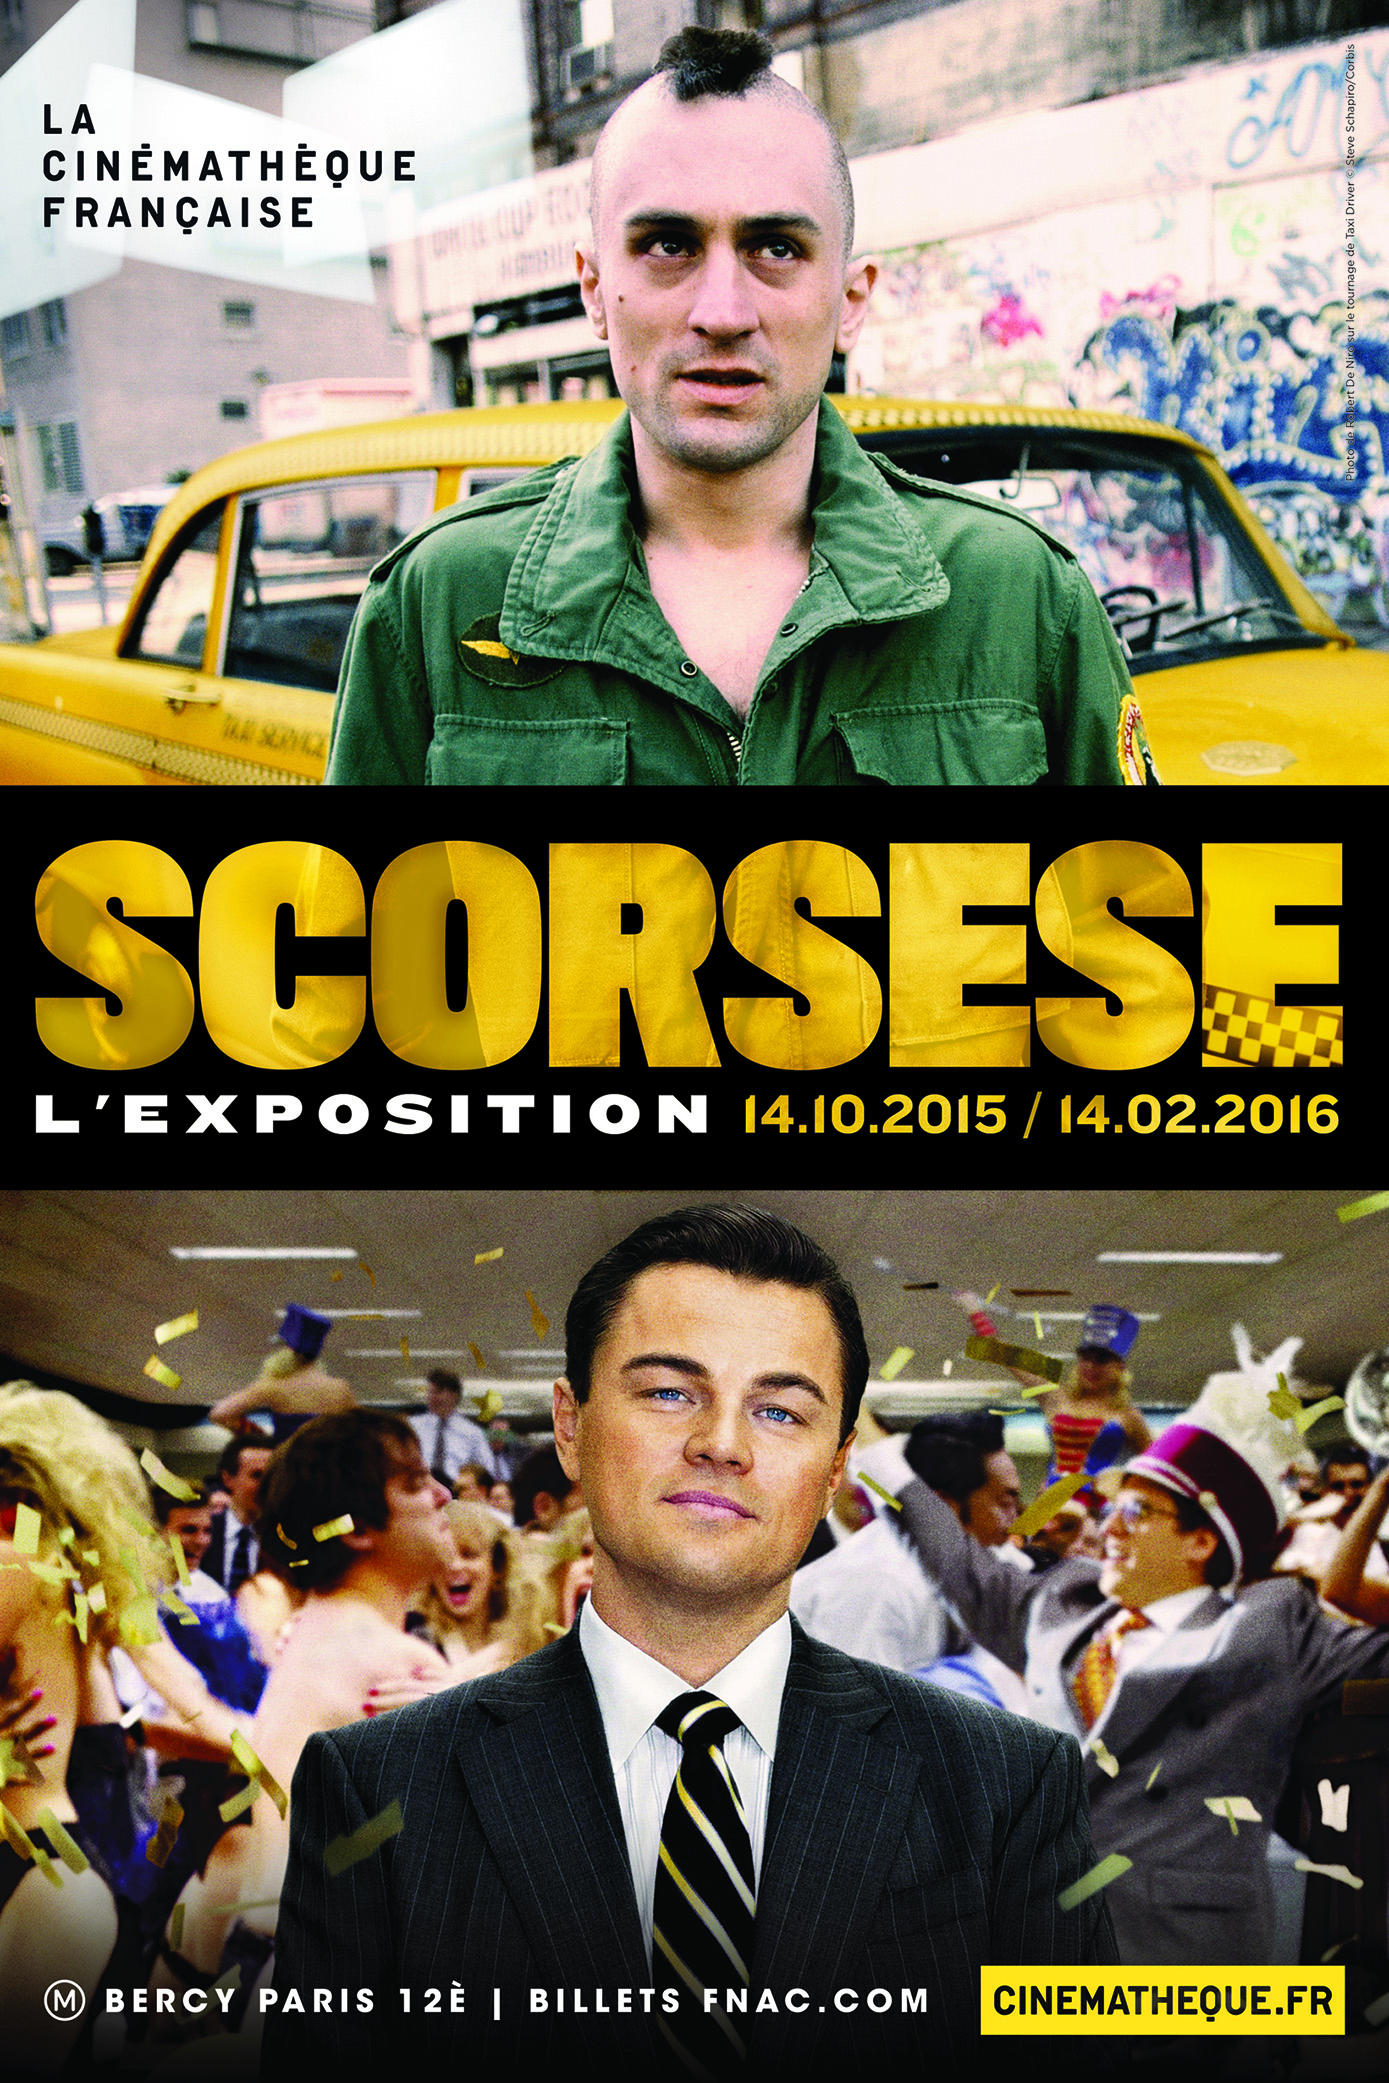 Martin Scorsese - La Cinémathèque française